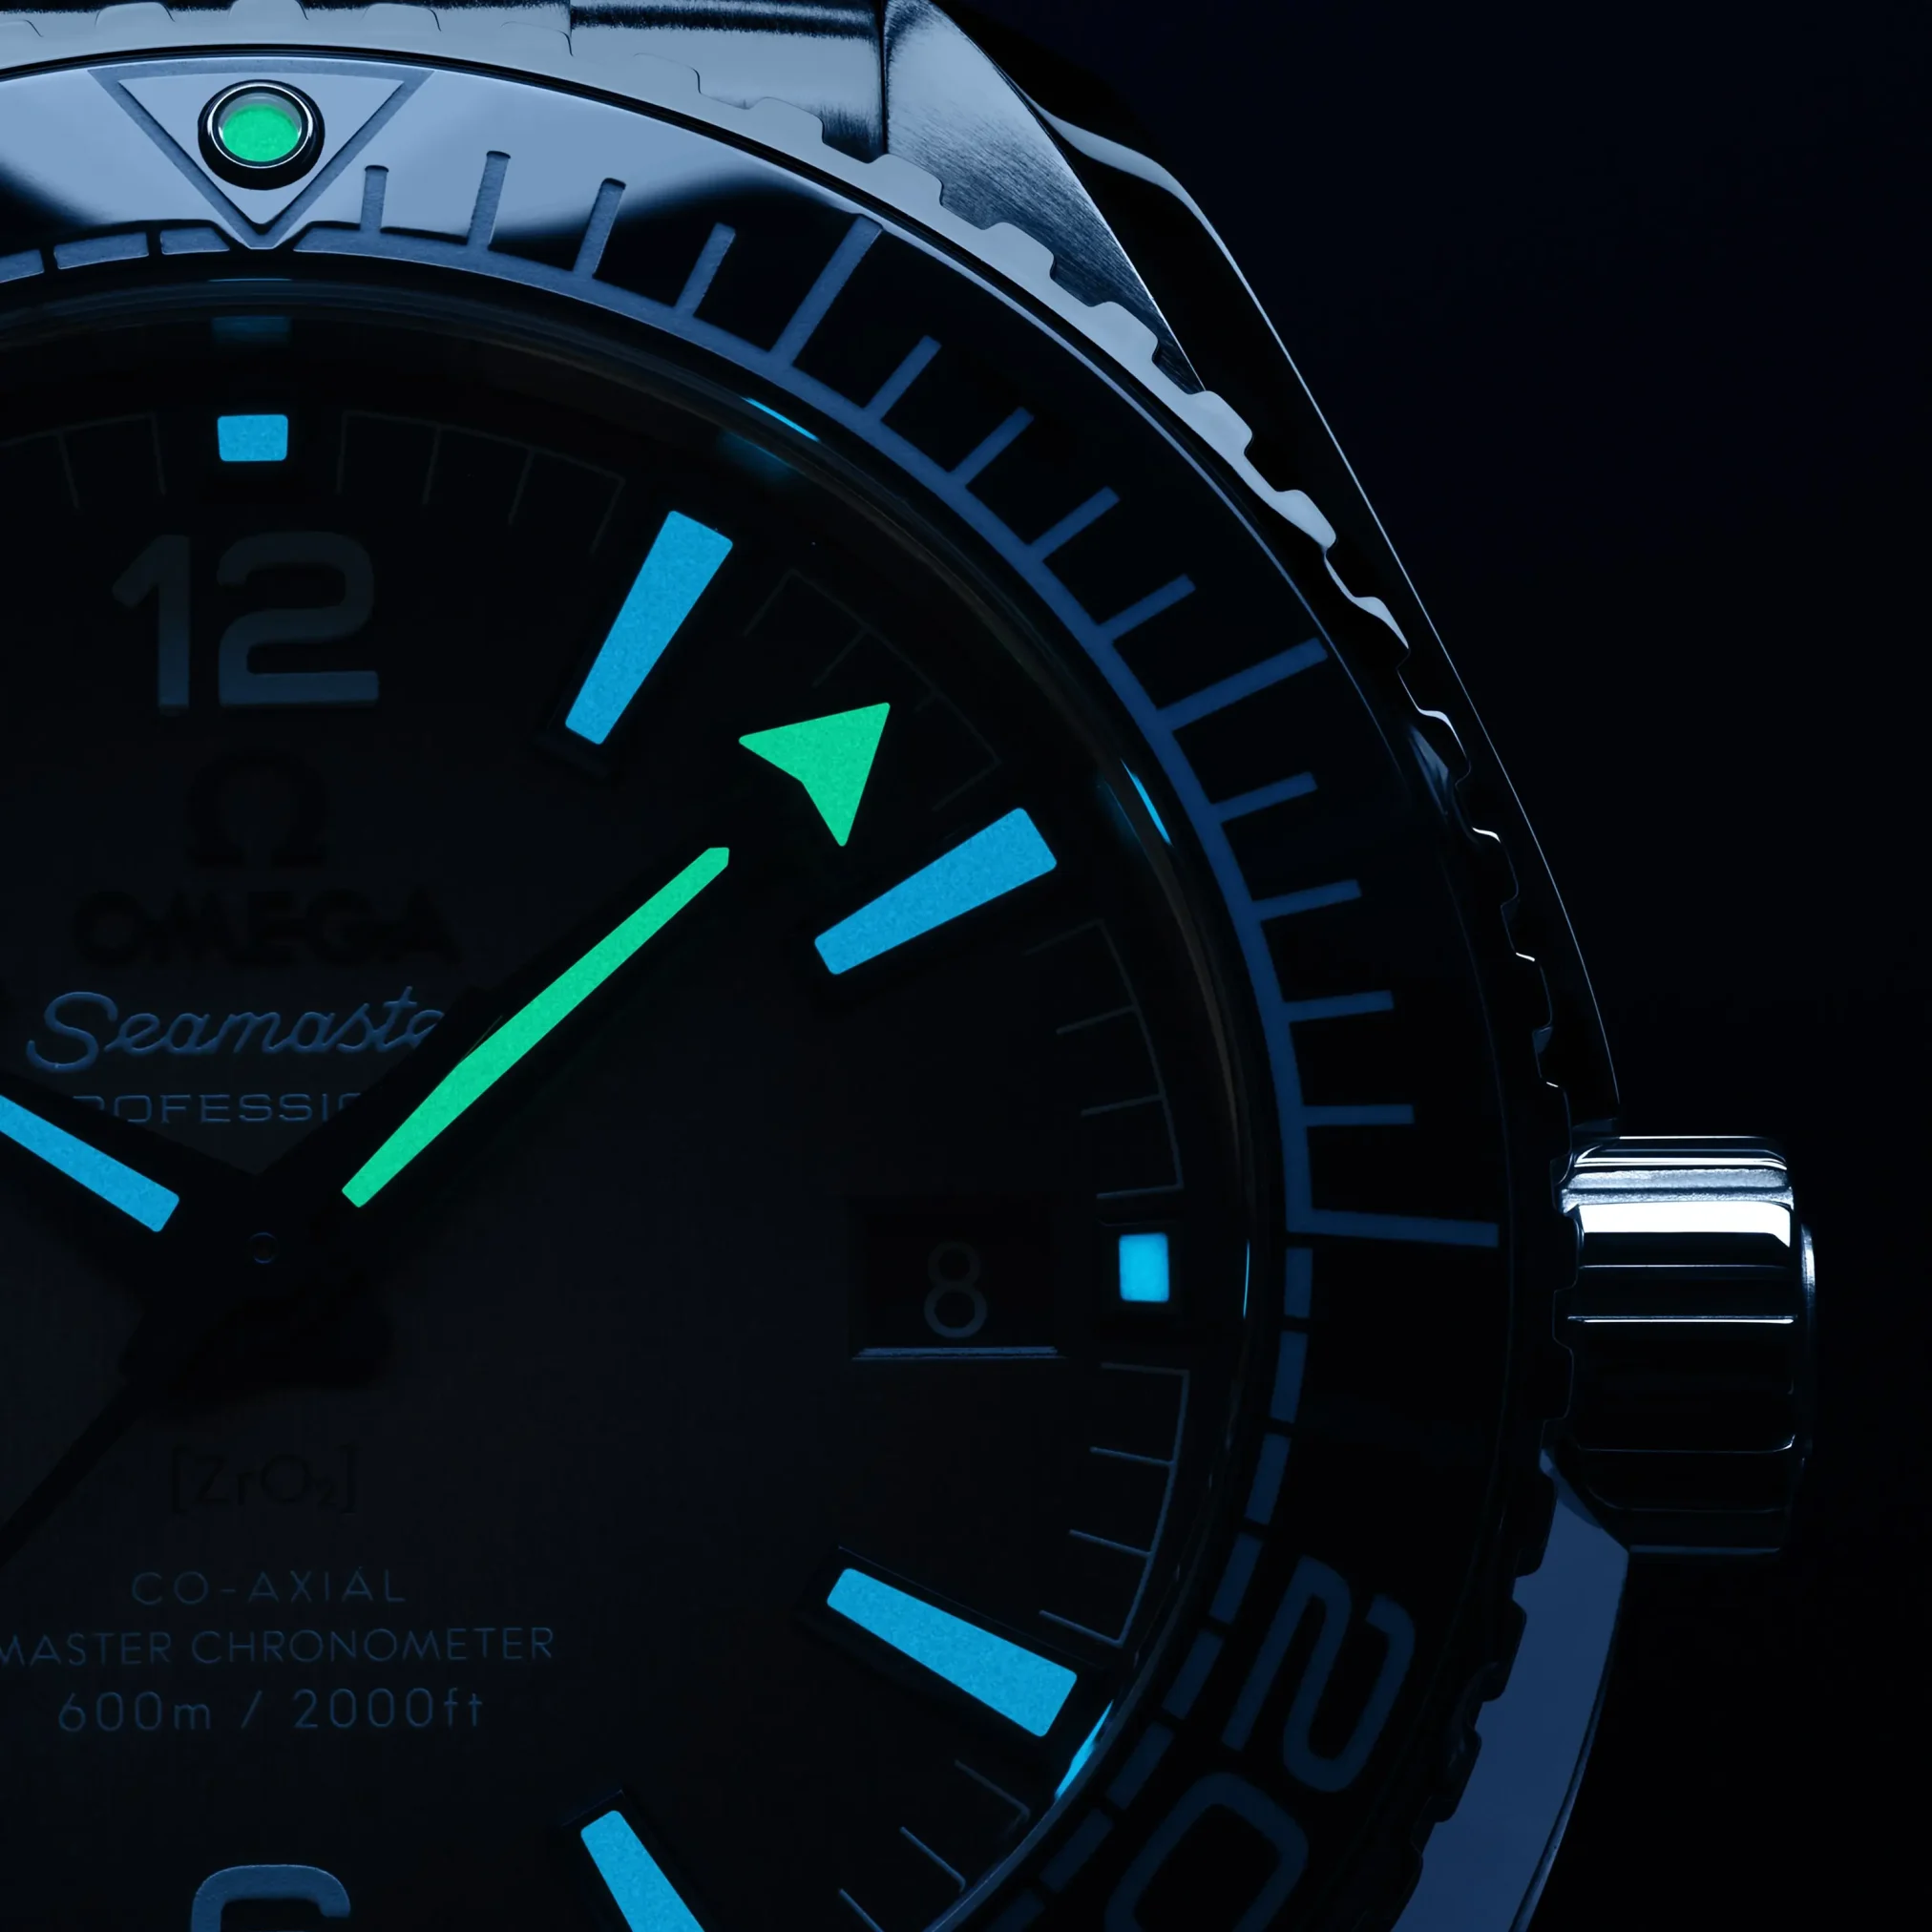 Đồng hồ Omega Seamaster Planet Ocean 600M 215.30.40.20.03.002 mặt số màu xanh. Dây đeo bằng thép. Thân vỏ bằng thép.